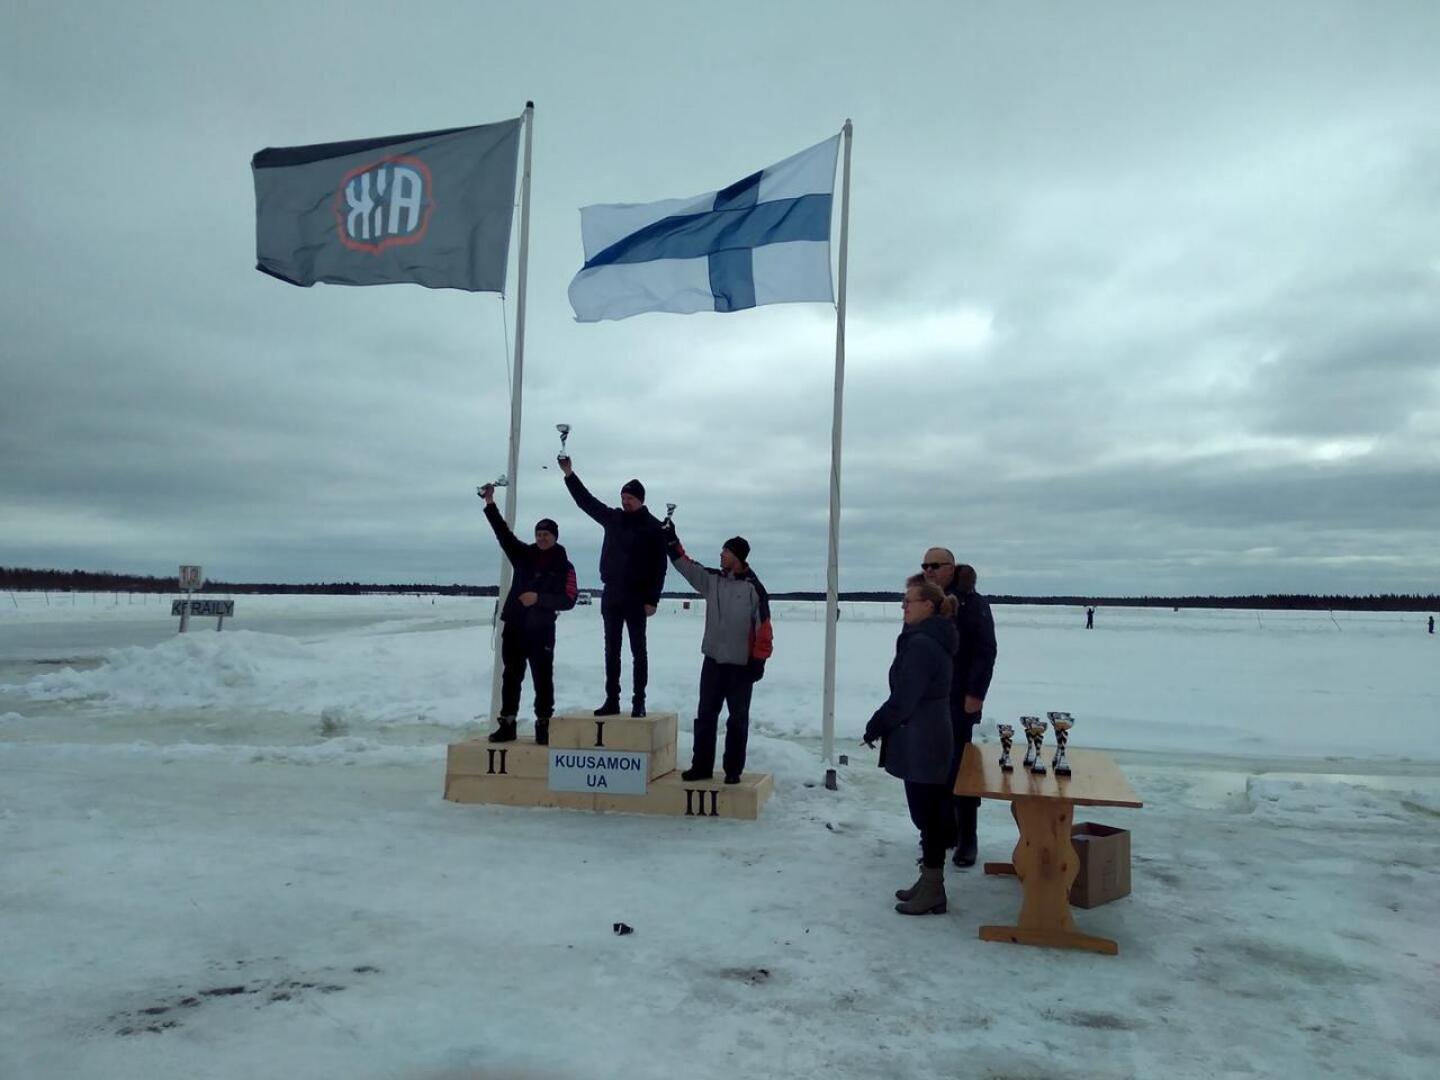 Tero Kivipelto voitti sunnuntaina jäärata-ajon SM-kilpailun viimeisen osakilpailun erikoisliukuesteluokassa.